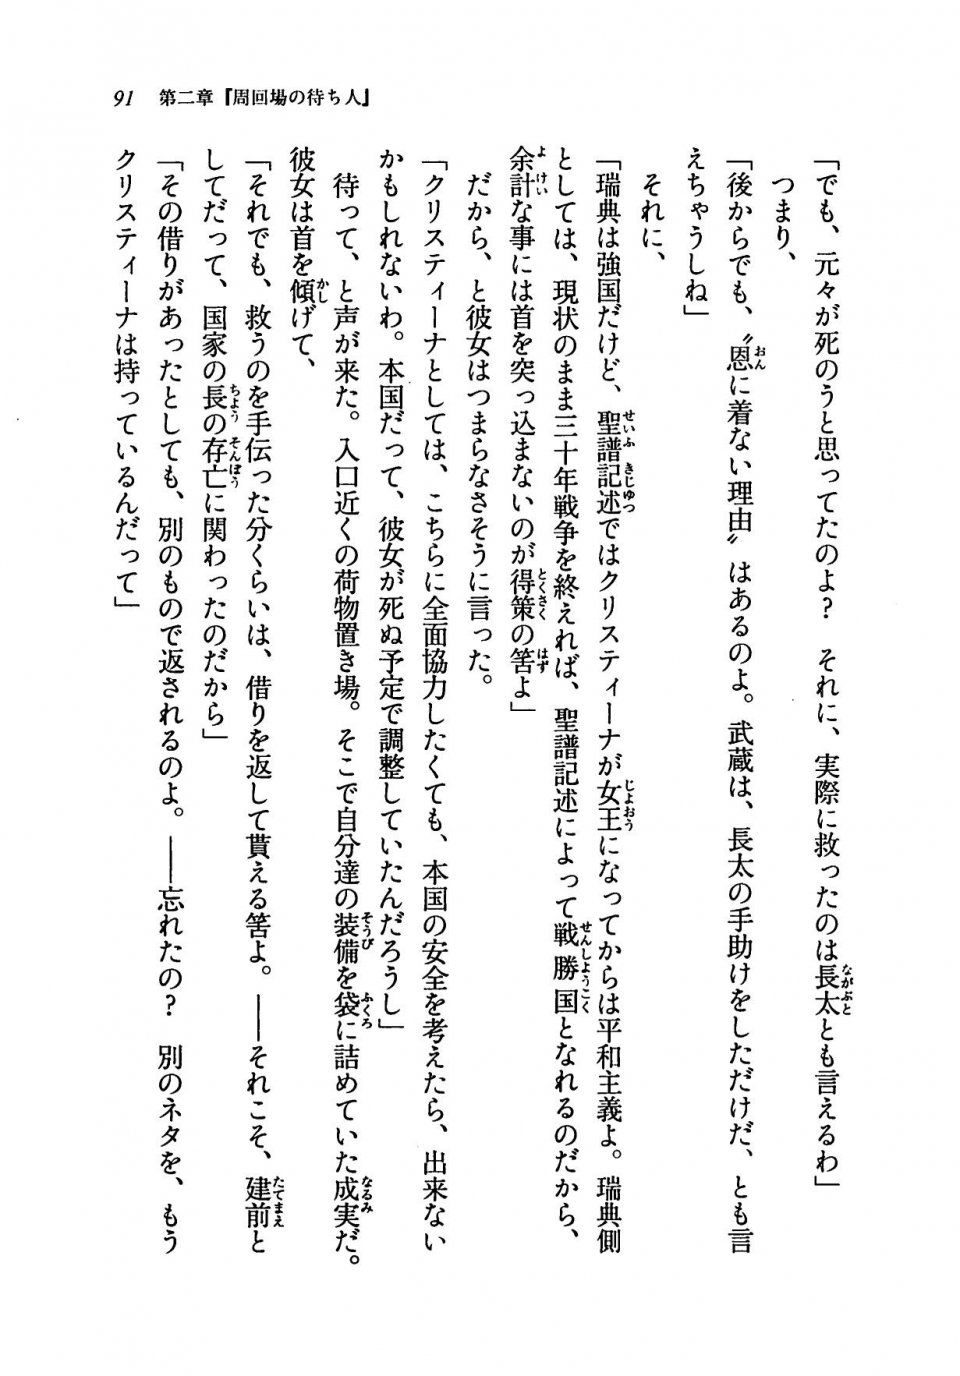 Kyoukai Senjou no Horizon LN Vol 19(8A) - Photo #91